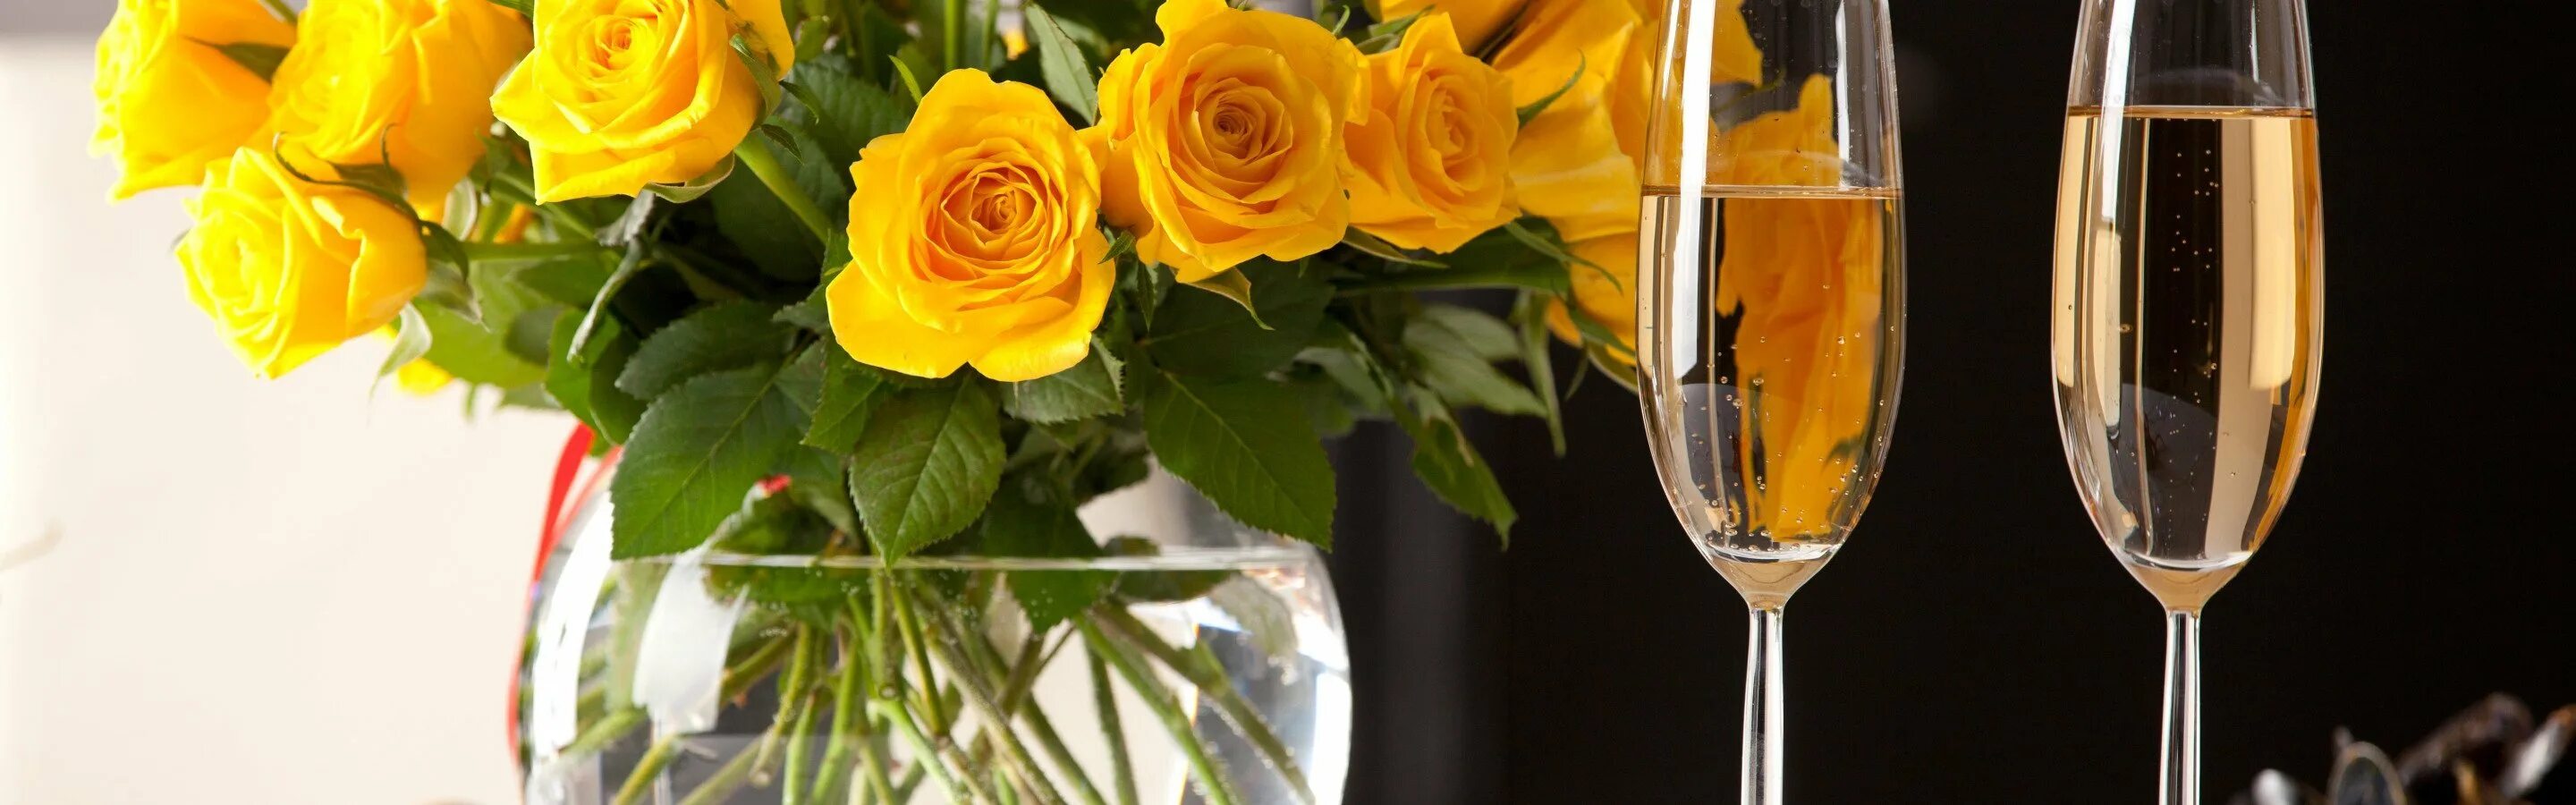 Шампанское и розы 54 глава. Цветы в бокале. Бокалы с шампанским. Цветы и шампанское. Красивые цветы в бокале.